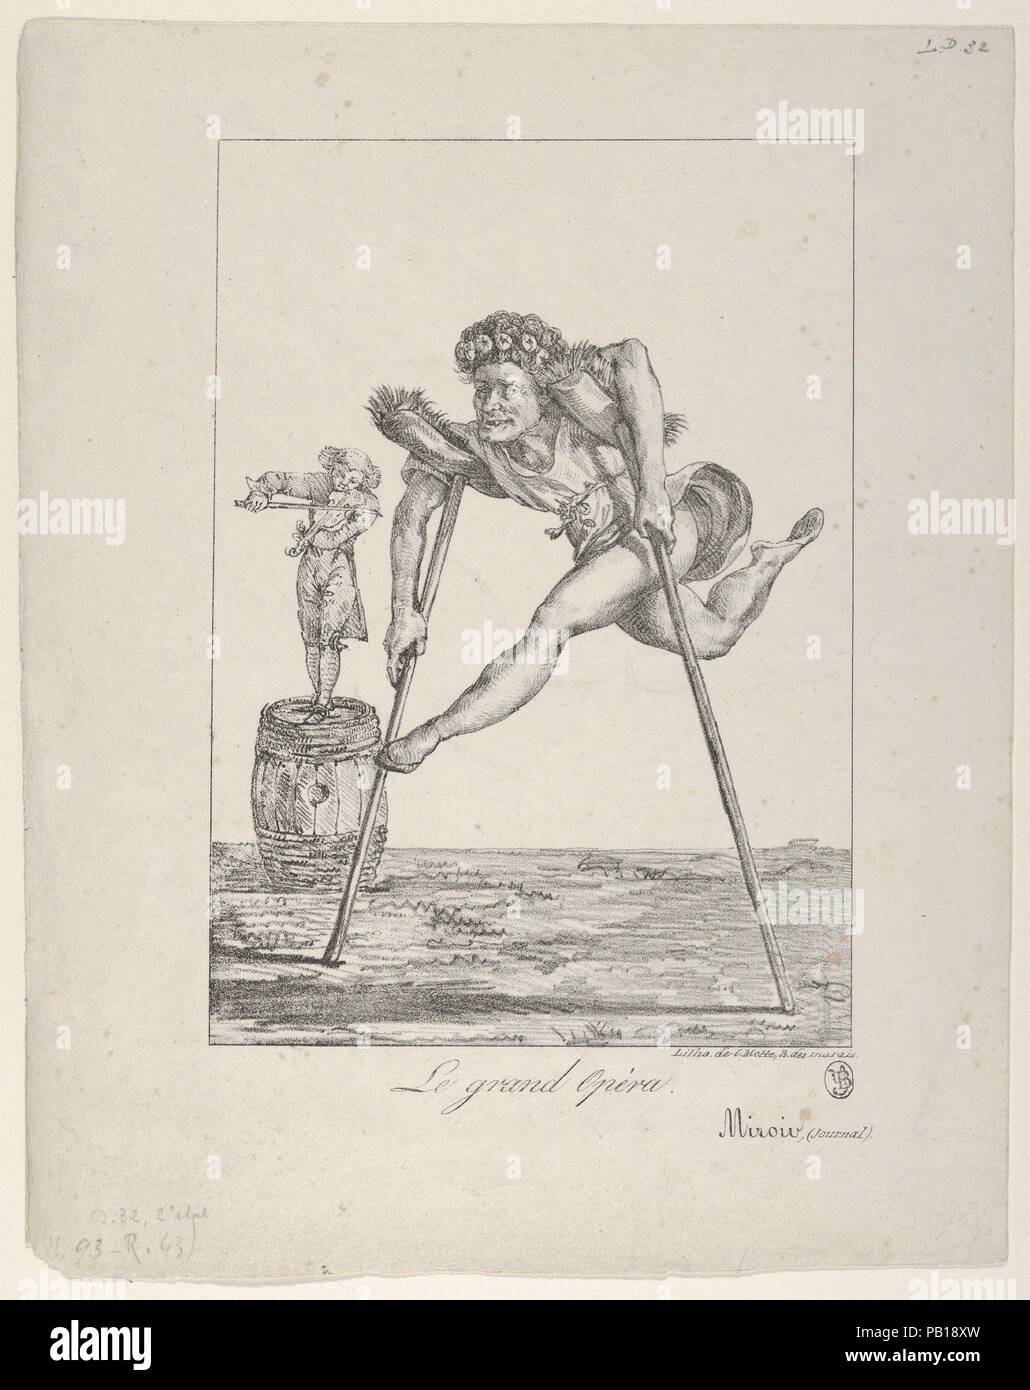 Le Grand Opéra. Artiste : Eugène Delacroix (Français, Charenton-Saint-Maurice 1798-1863 Paris). Fiche Technique : Dimensions : 10 x 8 13/16 9/16 in. (27,5 x 21,8 cm) de droit : 7 15/16 x 5 11/16 in. (20,2 x 14,4 cm). Date : 1821. Musée : Metropolitan Museum of Art, New York, USA. Banque D'Images